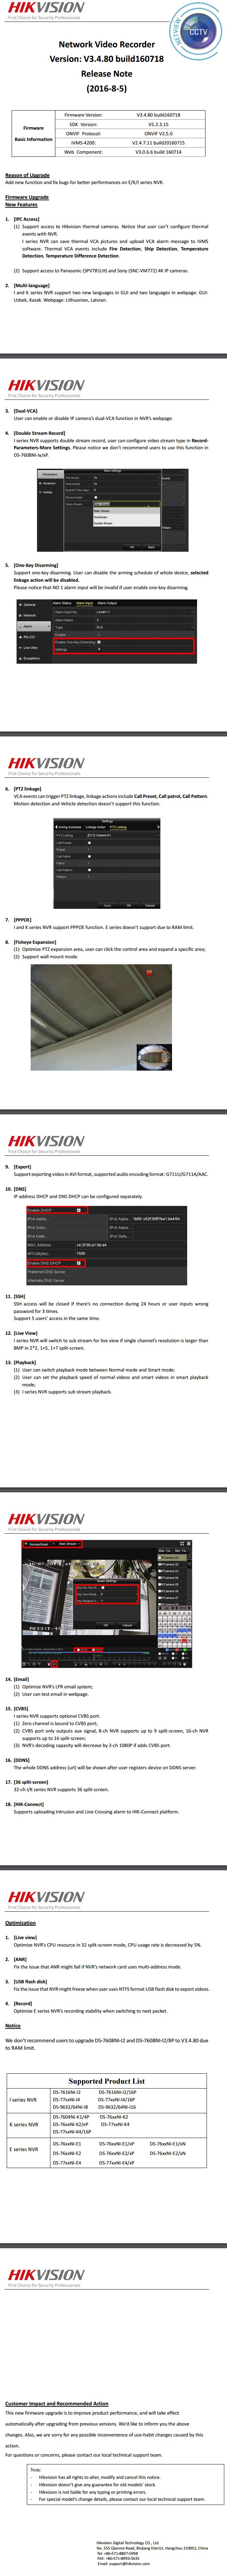 Hikvision NVR Firmware Version V3.4.80 build160718 Release Notes .....